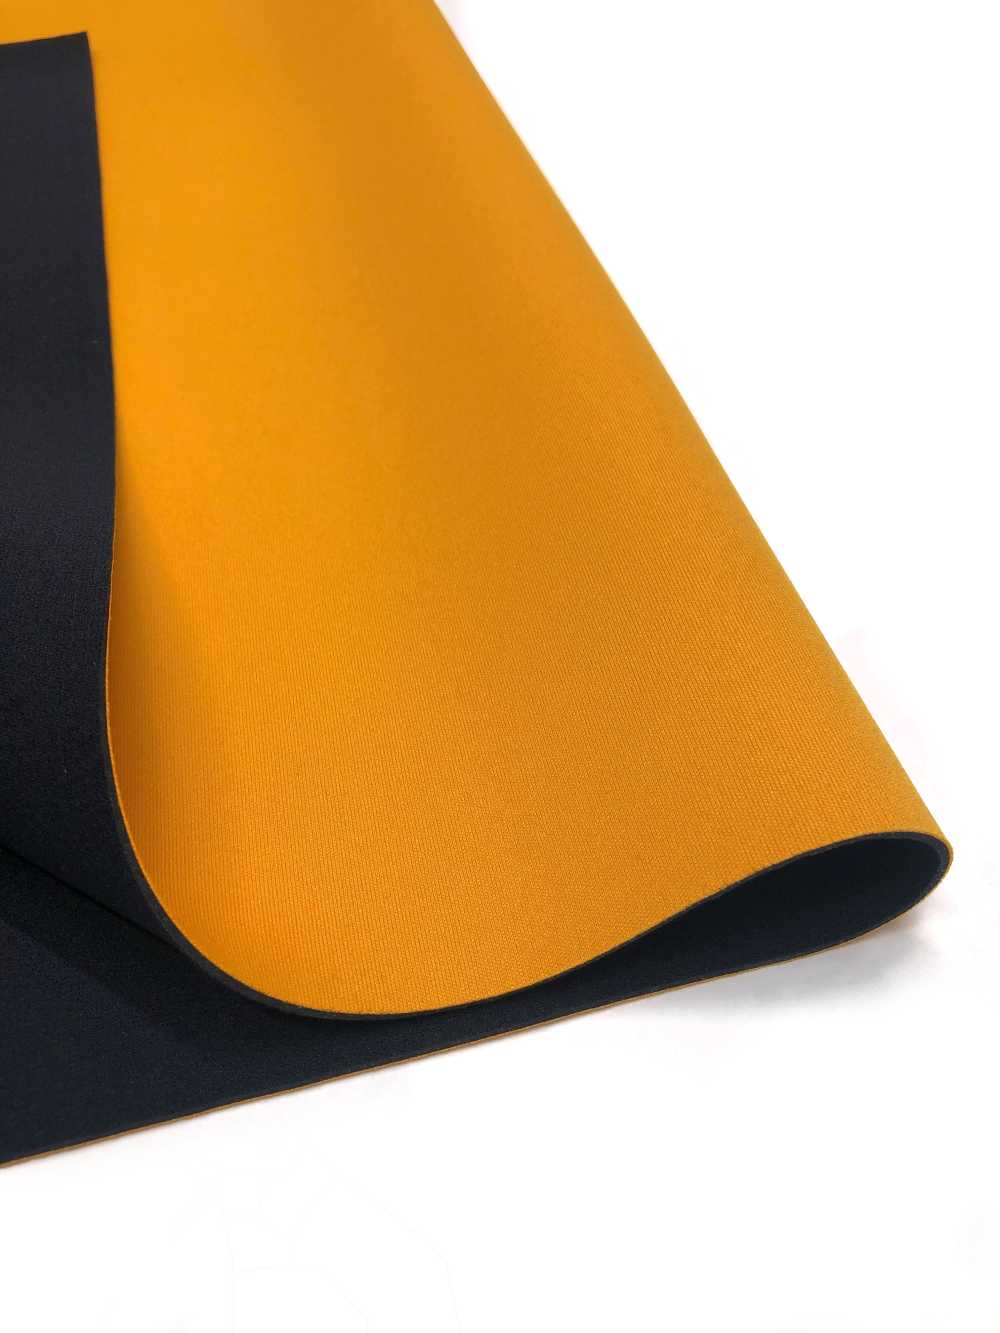 31041 HM AL Orange/PS Schwarz 95 × 170 Cm[Textilgewebe] Schildkröte